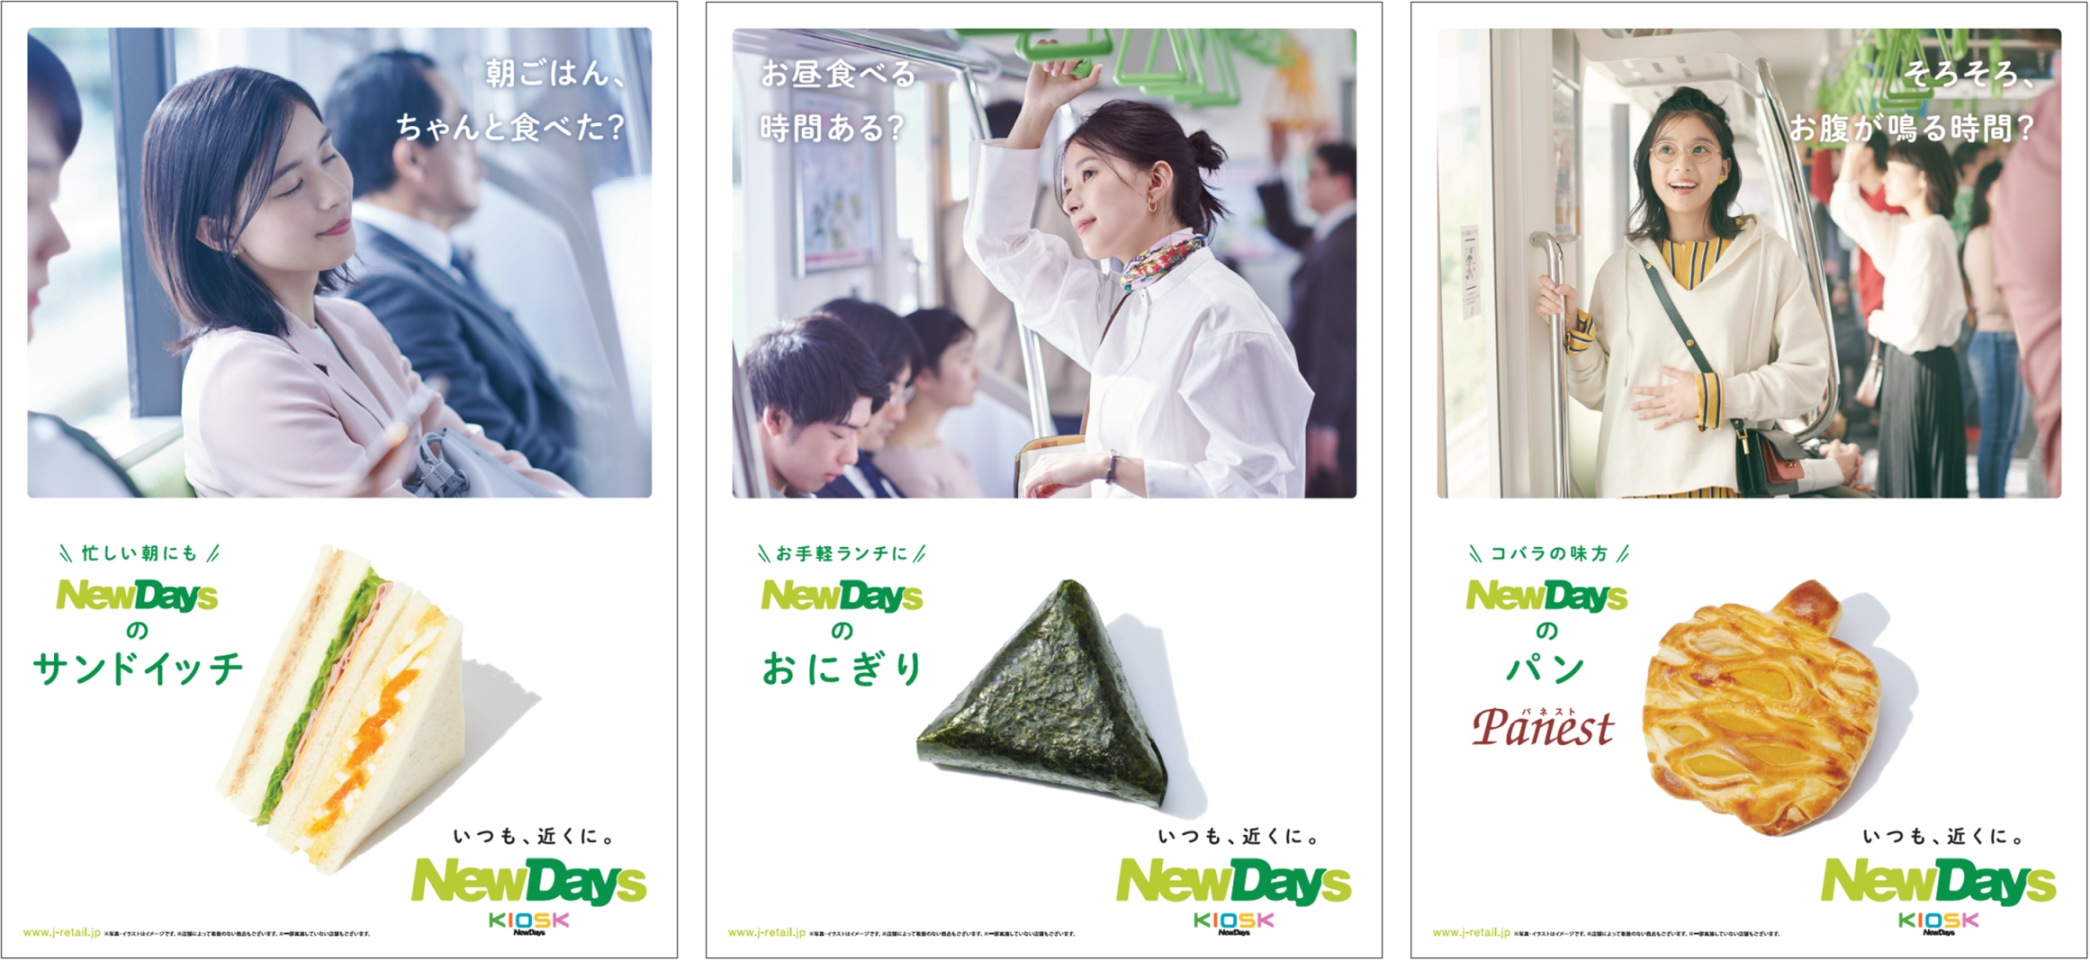 女優・芳根京子さんが好演！
NewDaysの新ビジュアル・新CM動画を
4月1日(水)より公開